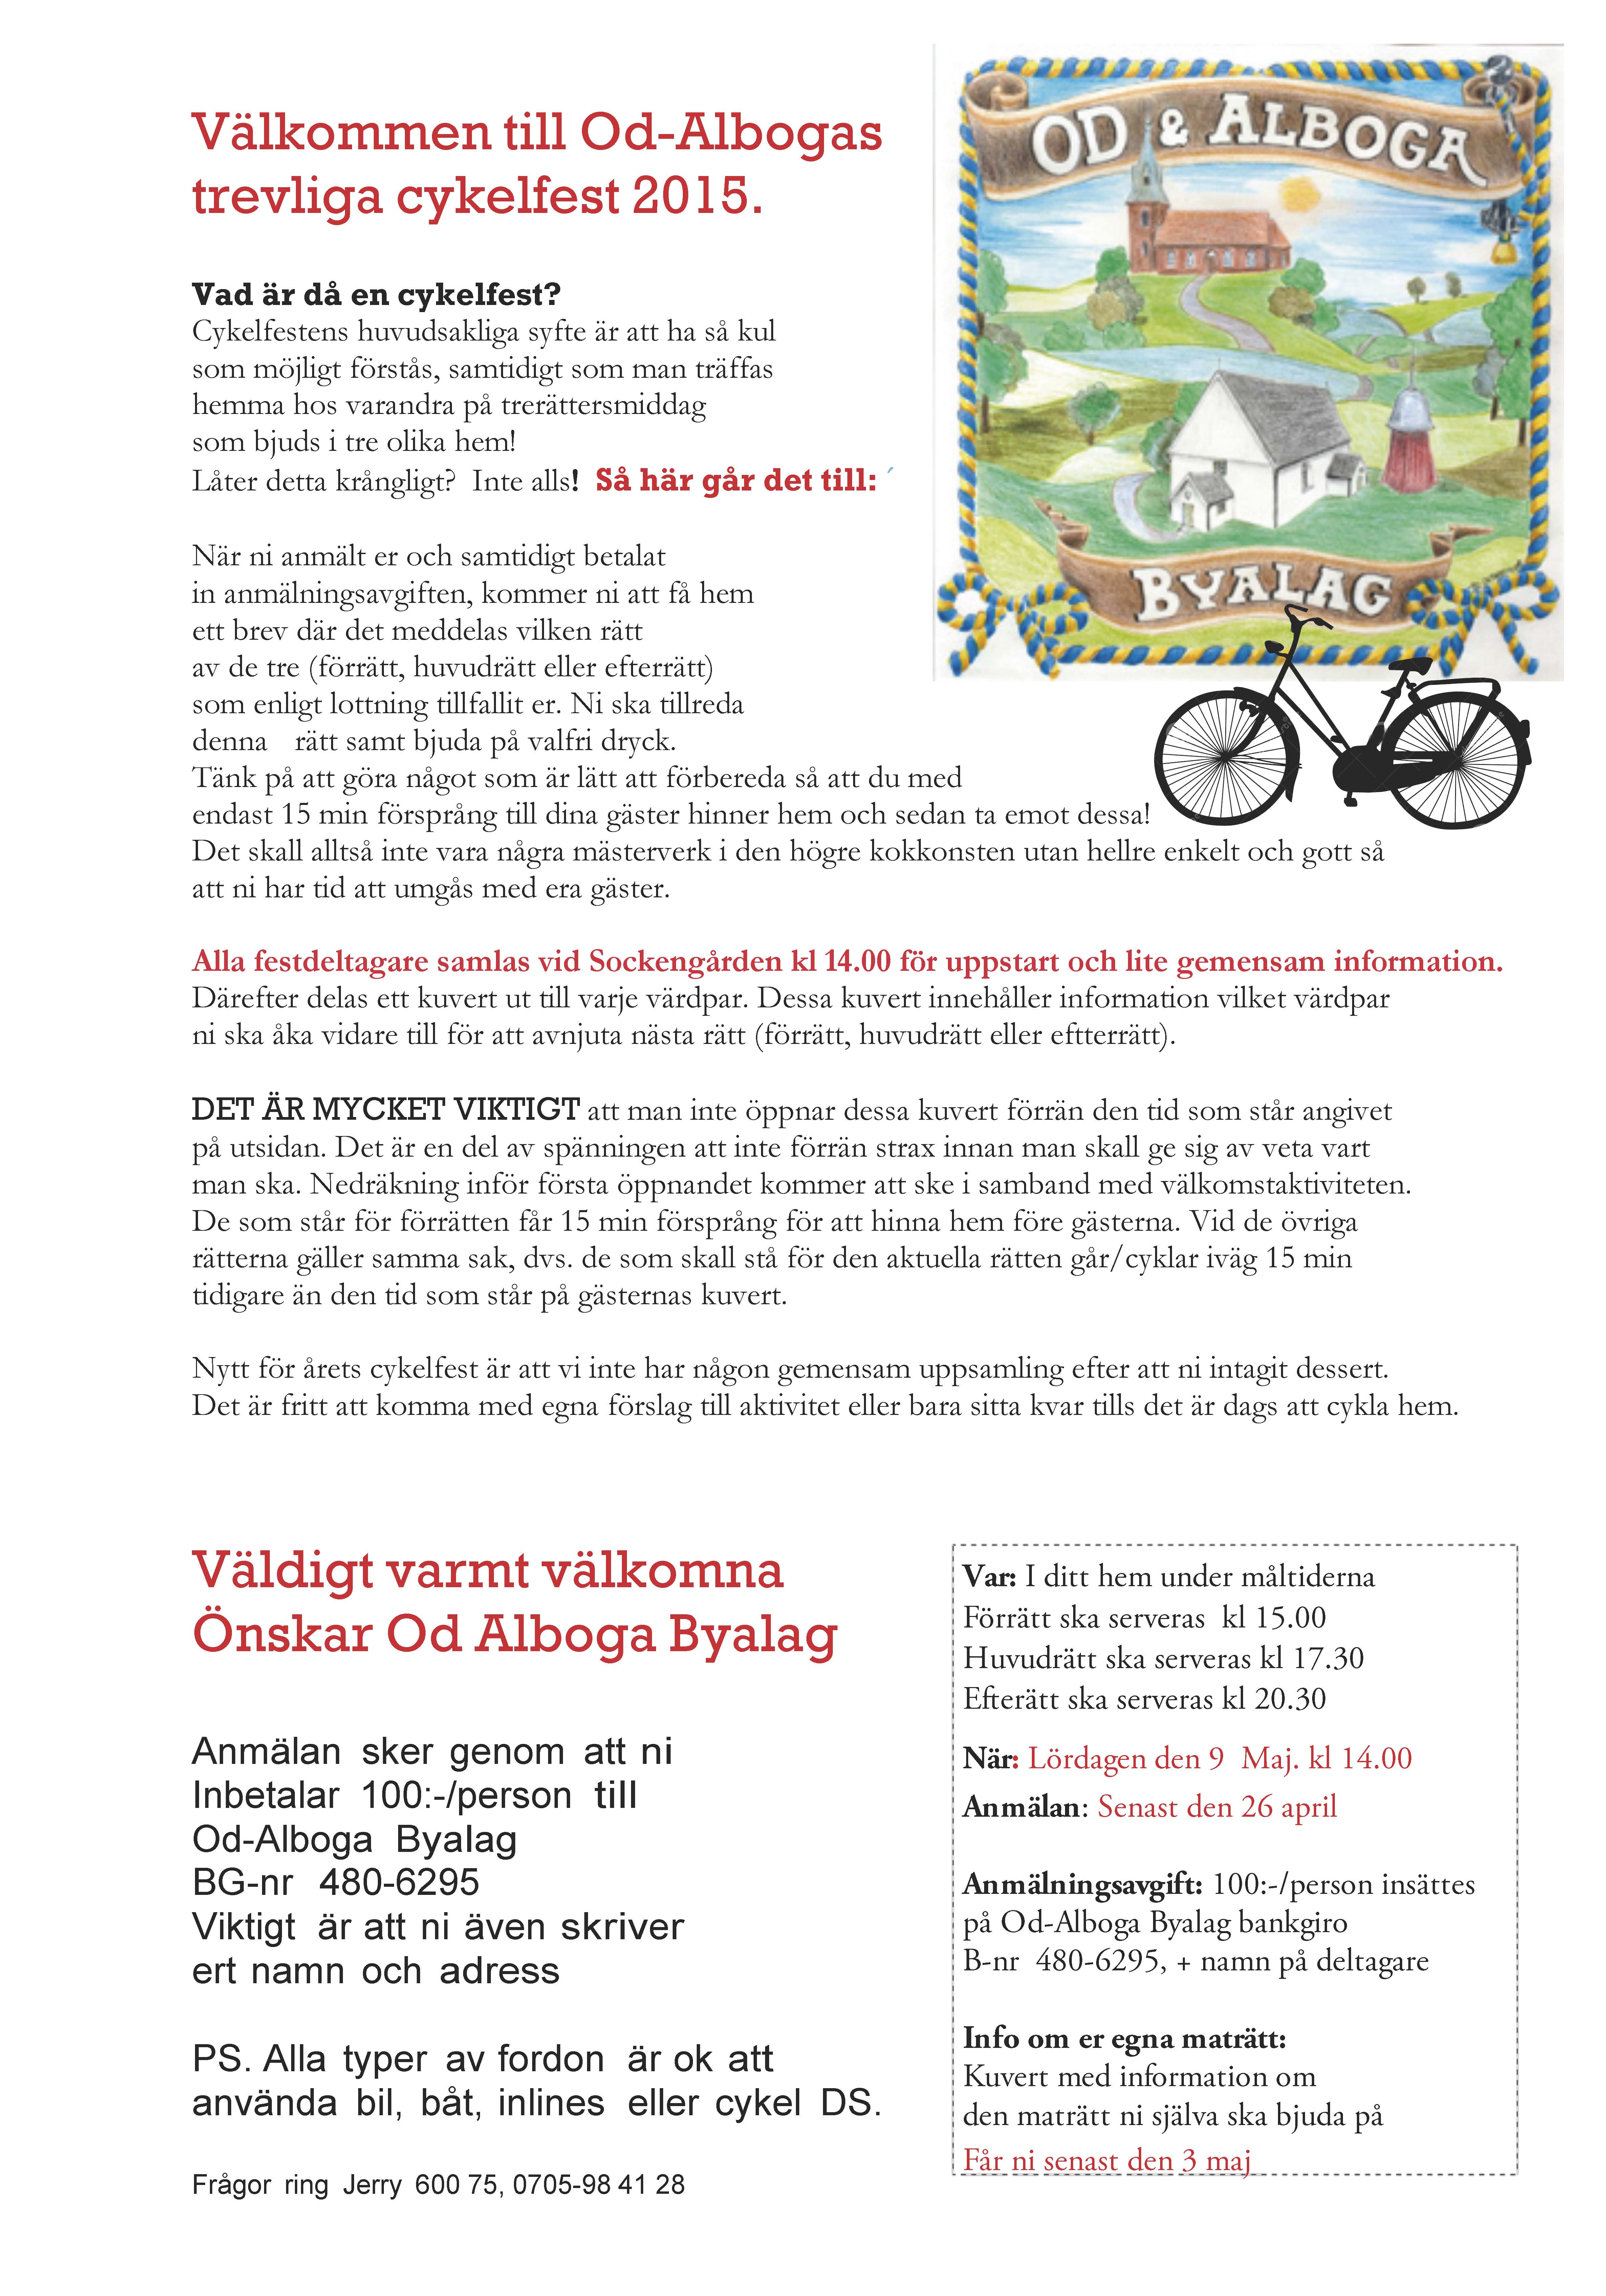 New-Välkommen till Cykelfest-2015